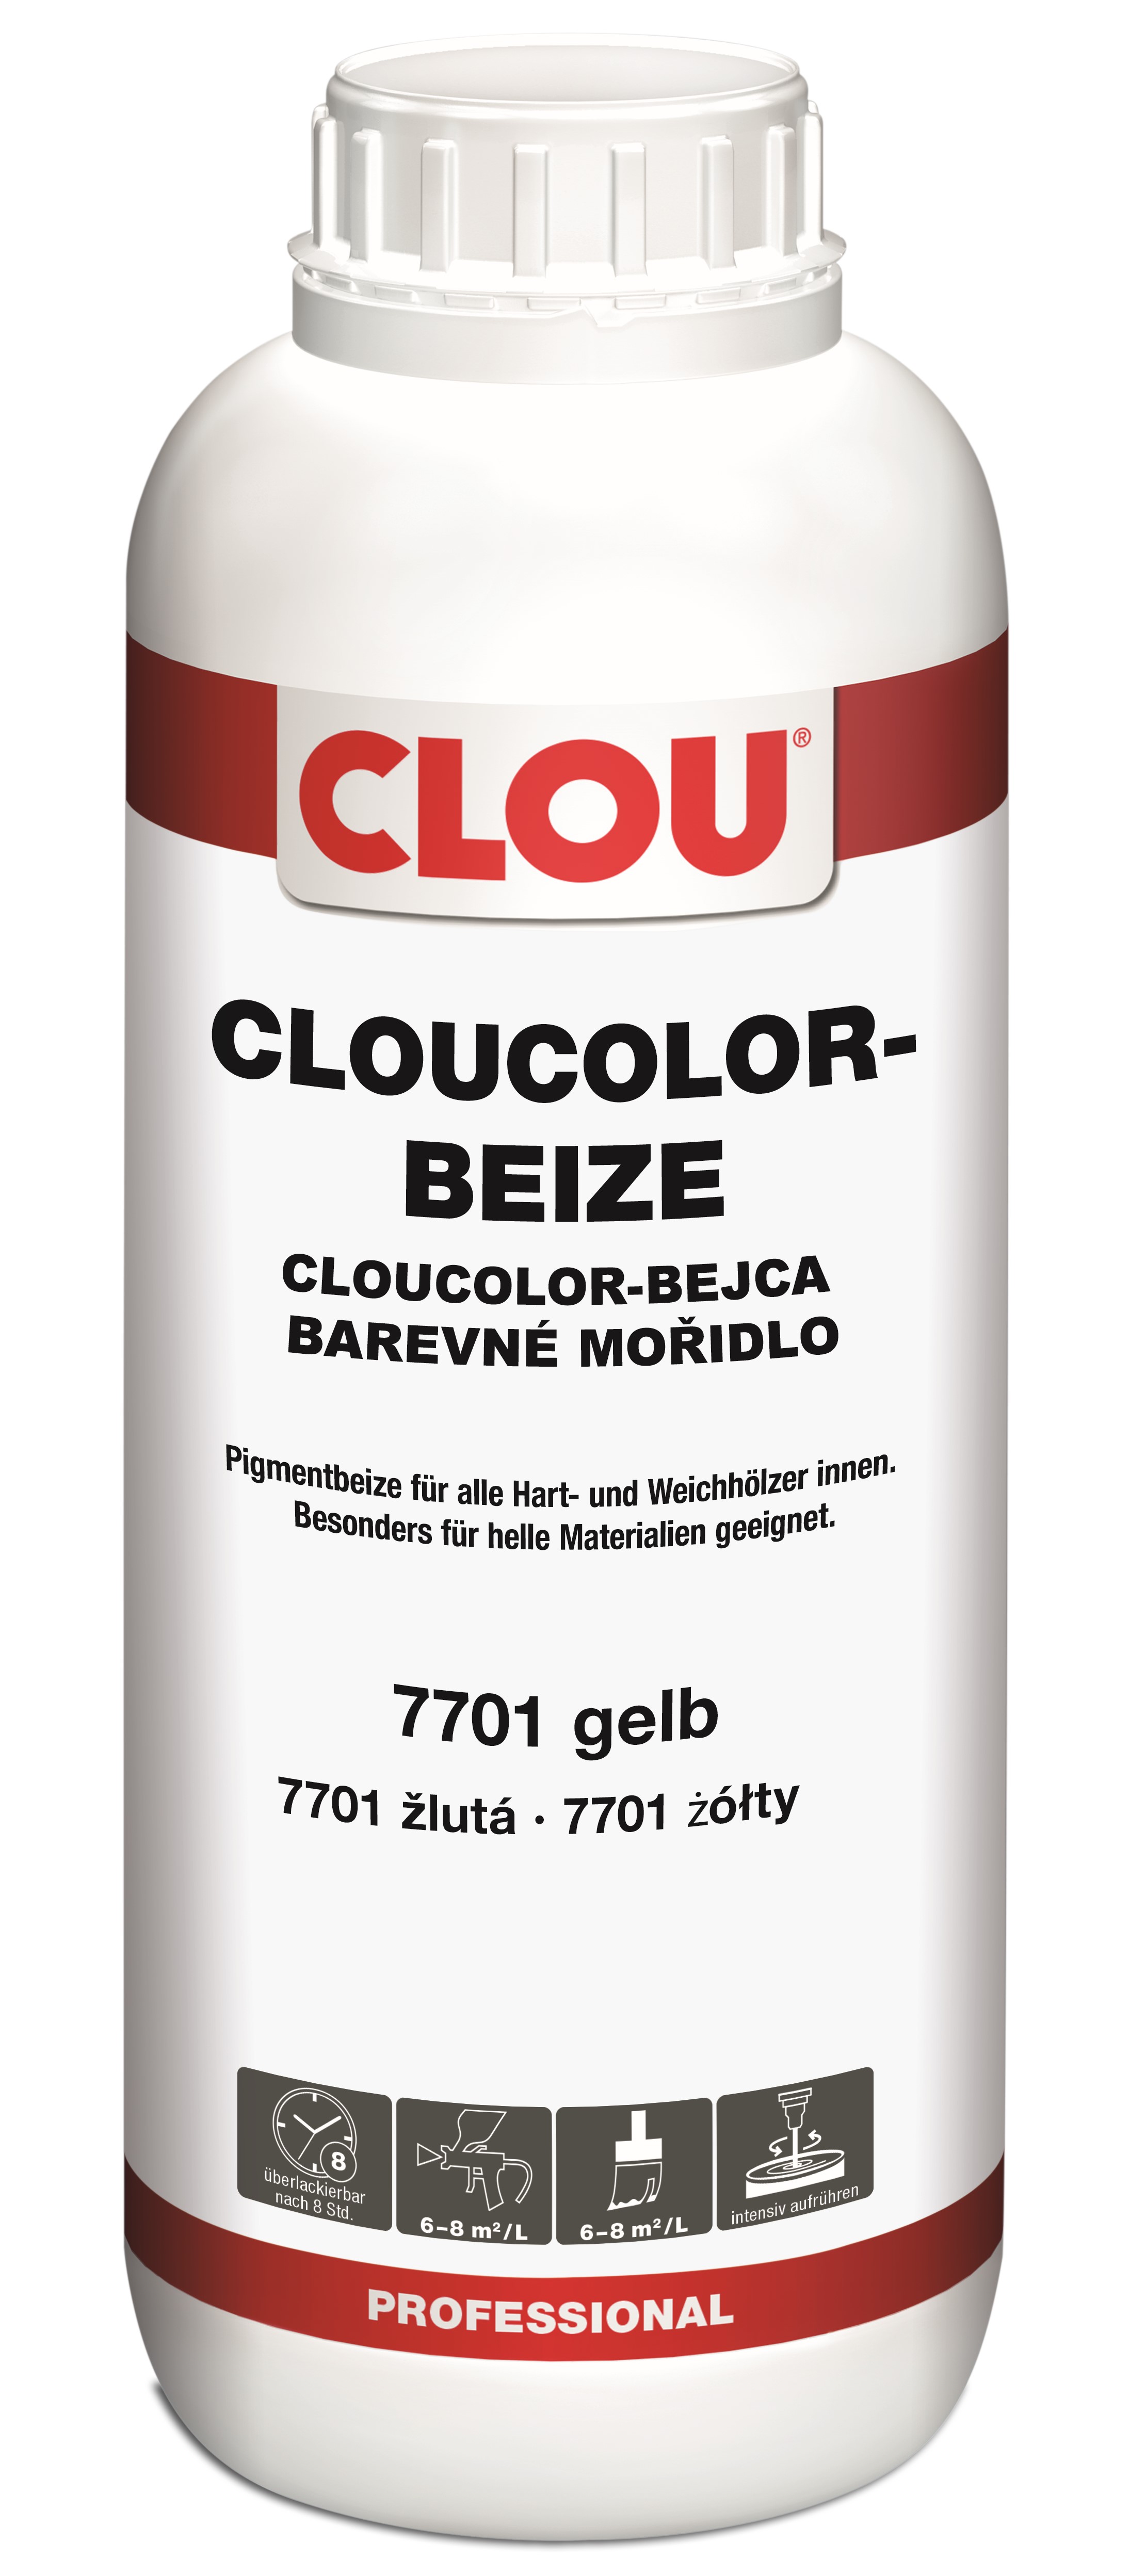 CLOUCOLOR-Beize